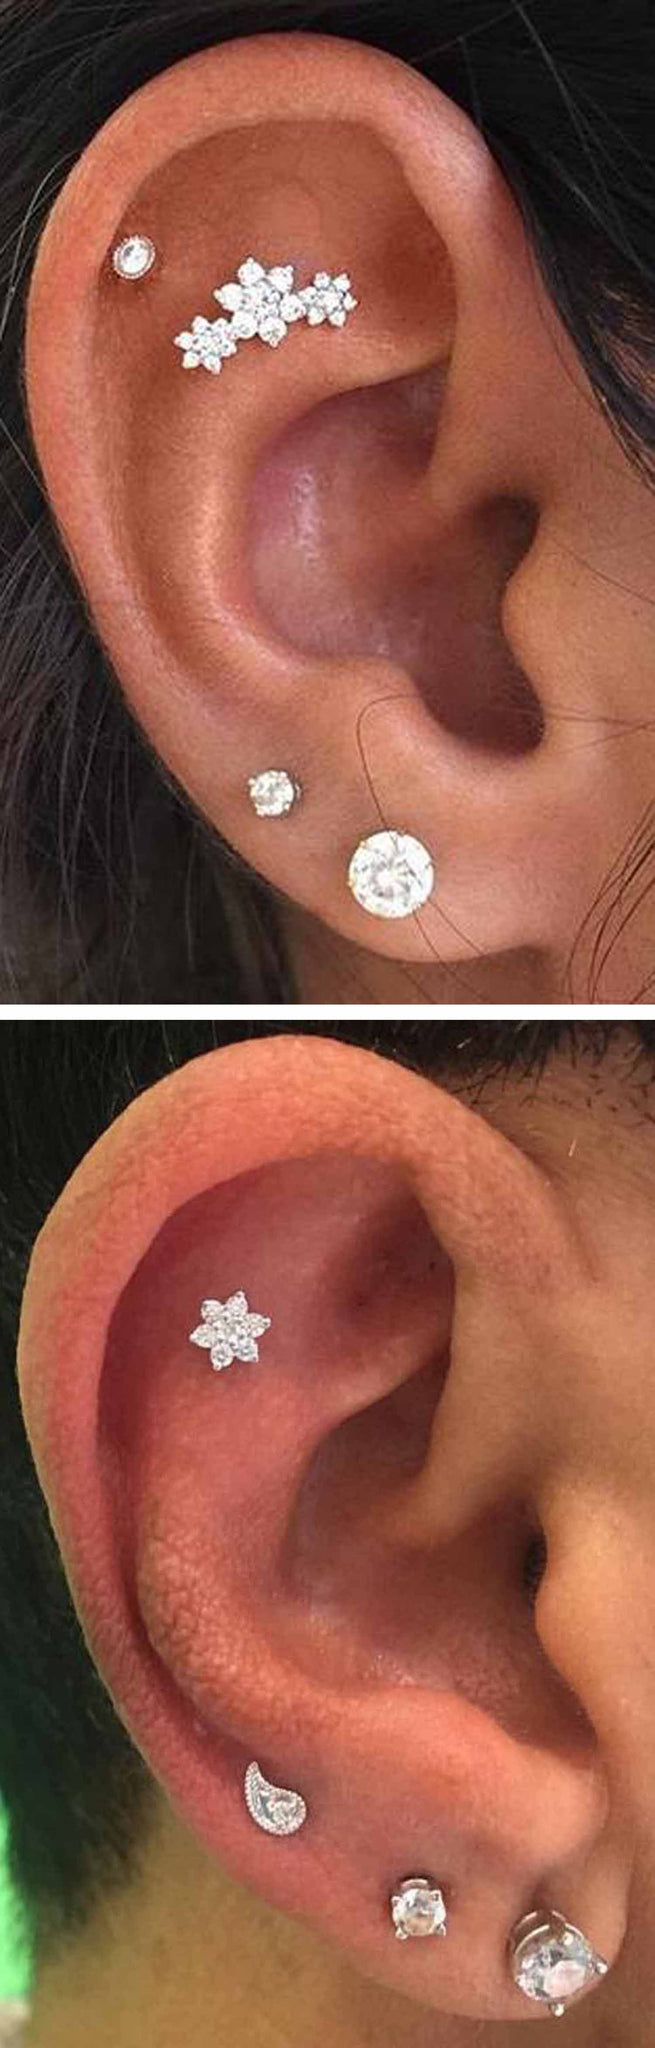 Cute Multiple Ear Piercing Ideas Cartilage at MyBodiArt.com - Triple Double Earring Lobe Studs in Silver